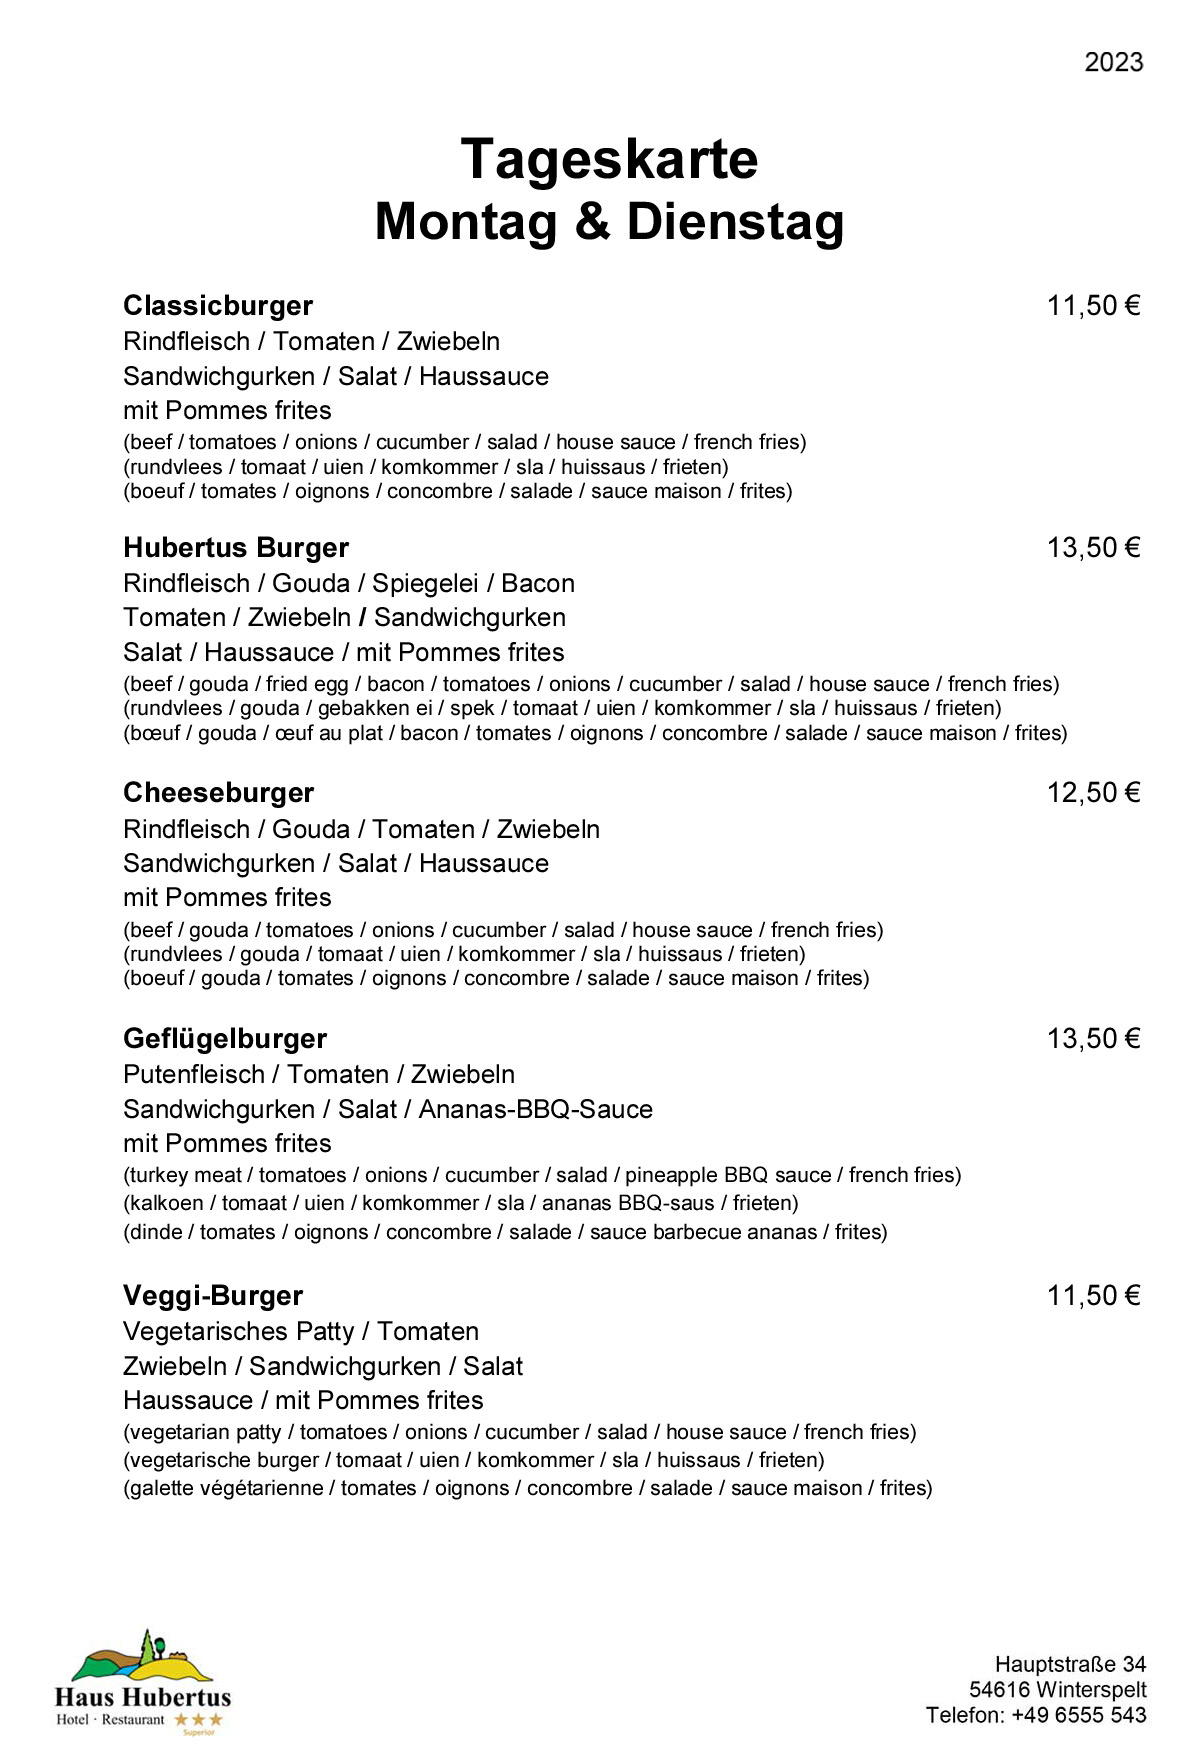 Hotel - Restaurant Haus Hubertus - Speisekarte 02/2023 - Tageskarte / Montat & Dienstag